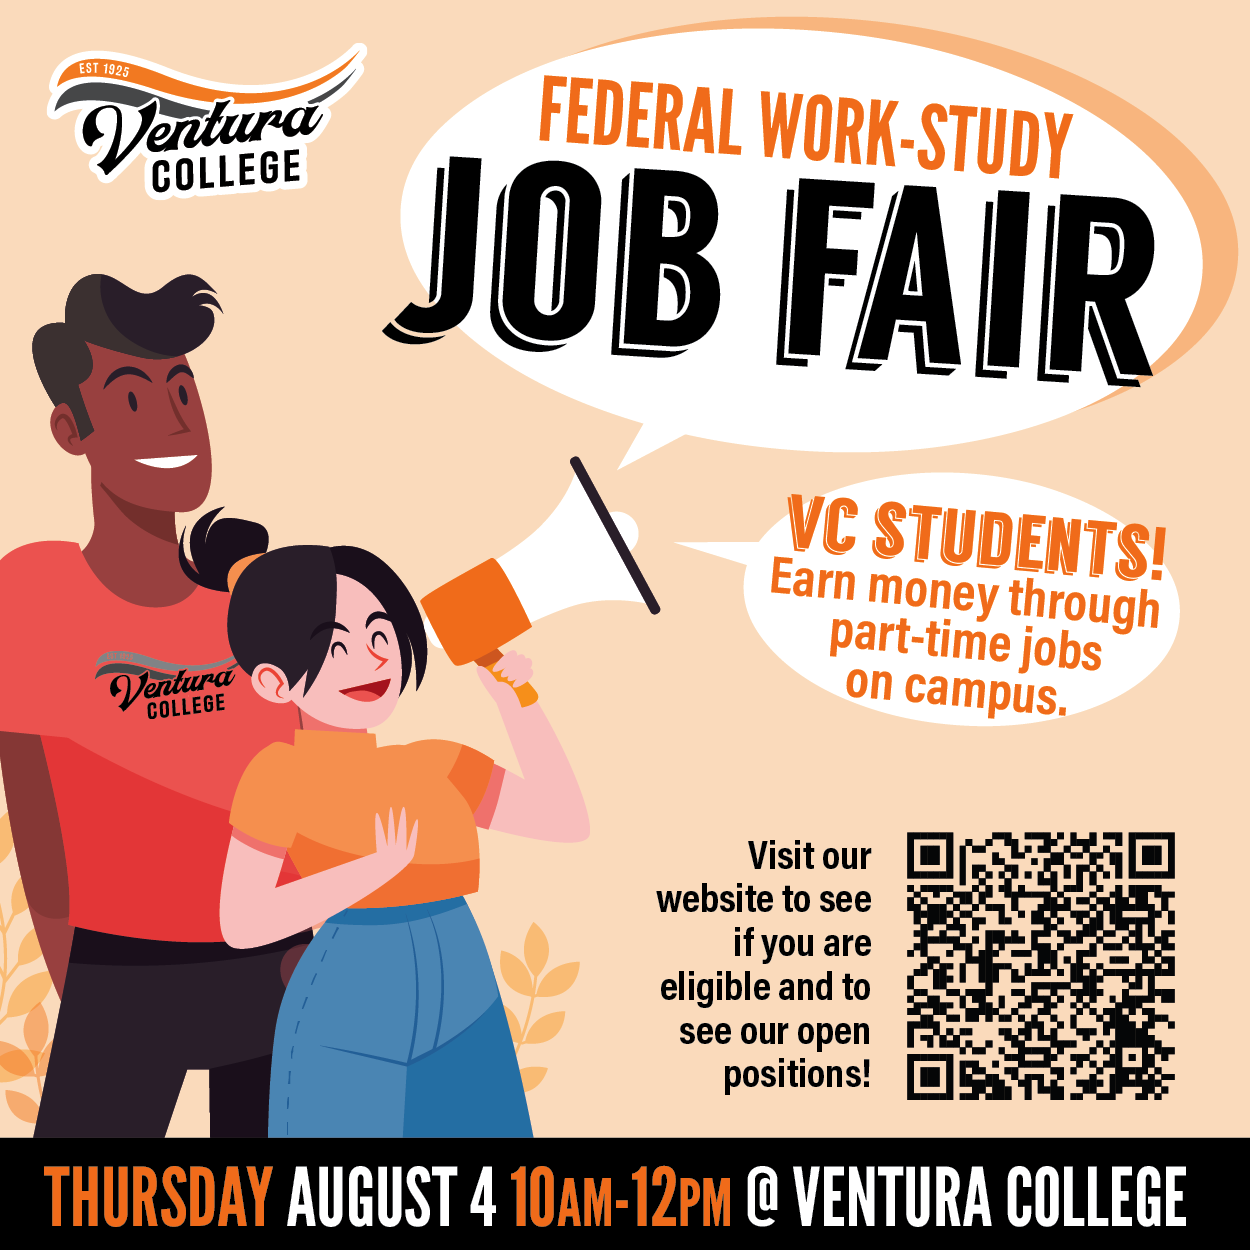 Federal Work Study Job Fair Thursday August 4, 2022